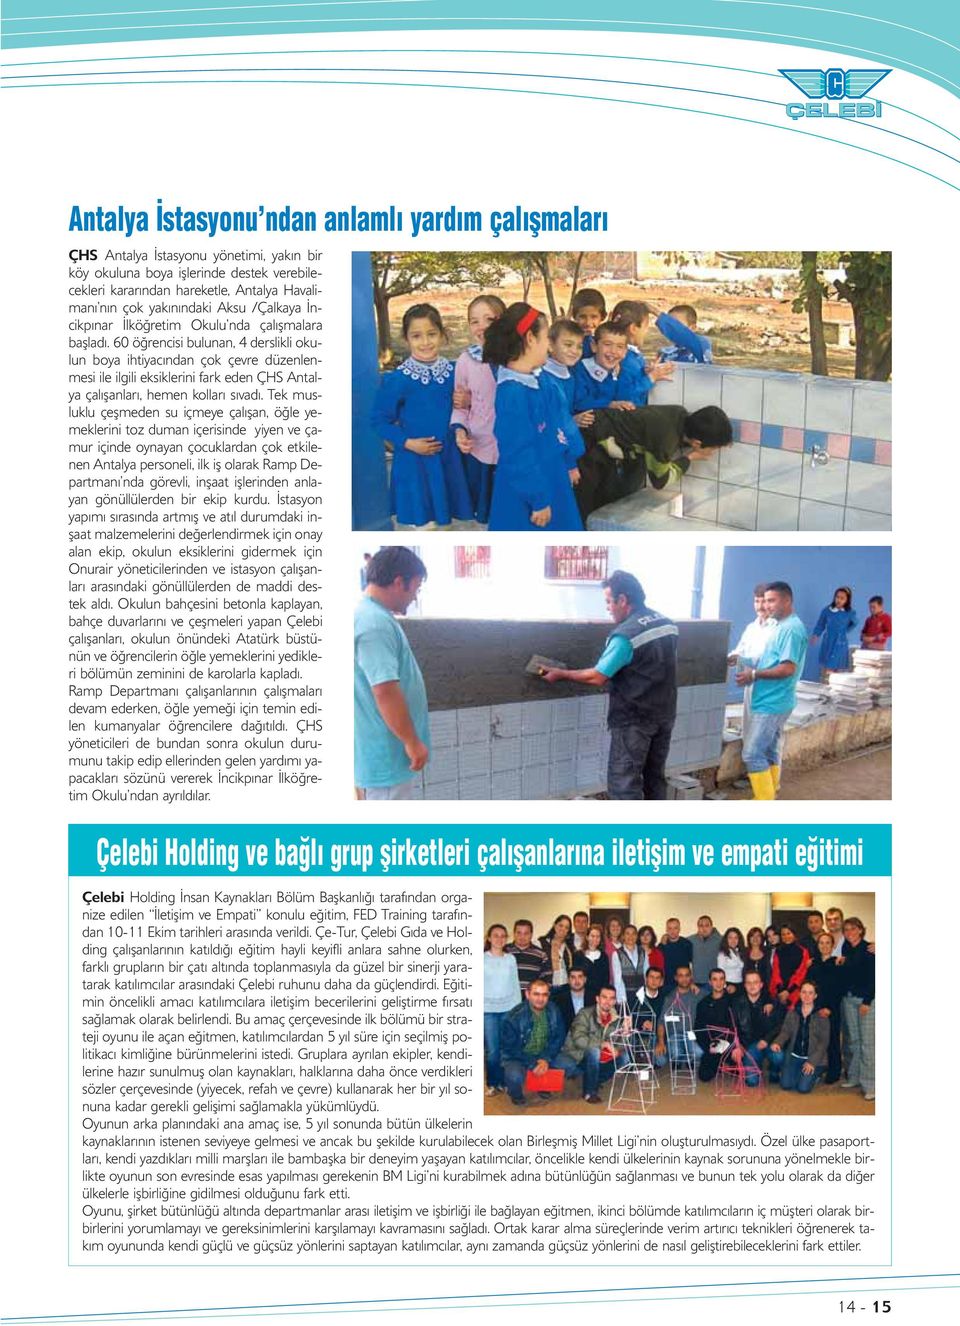 60 öğrencisi bulunan, 4 derslikli okulun boya ihtiyacından çok çevre düzenlenmesi ile ilgili eksiklerini fark eden ÇHS Antalya çalışanları, hemen kolları sıvadı.